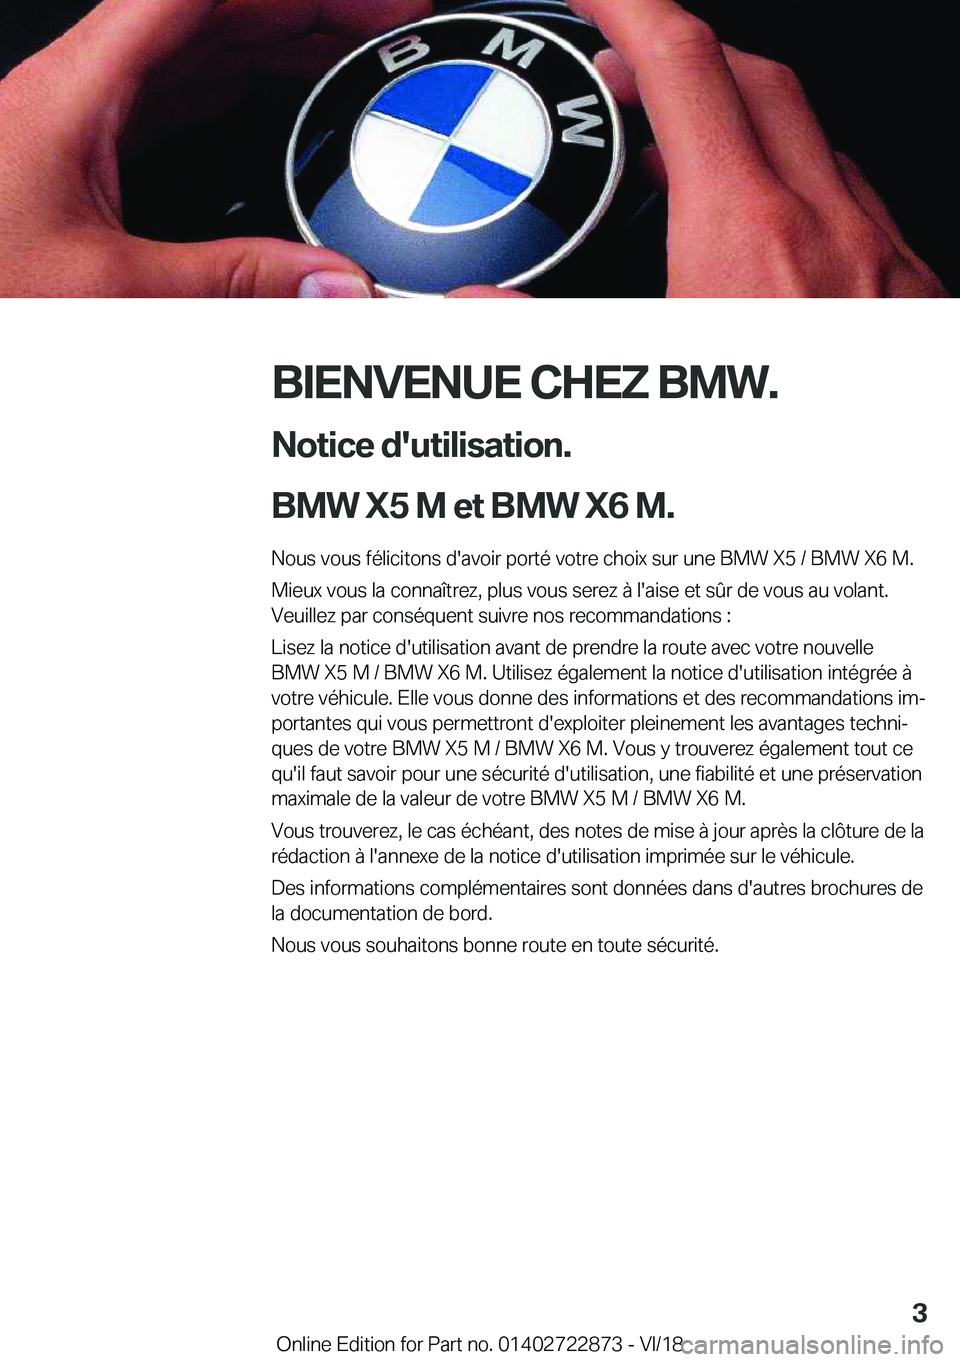 BMW X6 M 2019  Notices Demploi (in French) �B�I�E�N�V�E�N�U�E��C�H�E�Z��B�M�W�.�N�o�t�i�c�e��d�'�u�t�i�l�i�s�a�t�i�o�n�.
�B�M�W��X�5��M��e�t��B�M�W��X�6��M�. �N�o�u�s��v�o�u�s��f�é�l�i�c�i�t�o�n�s��d�'�a�v�o�i�r��p�o�r�t�